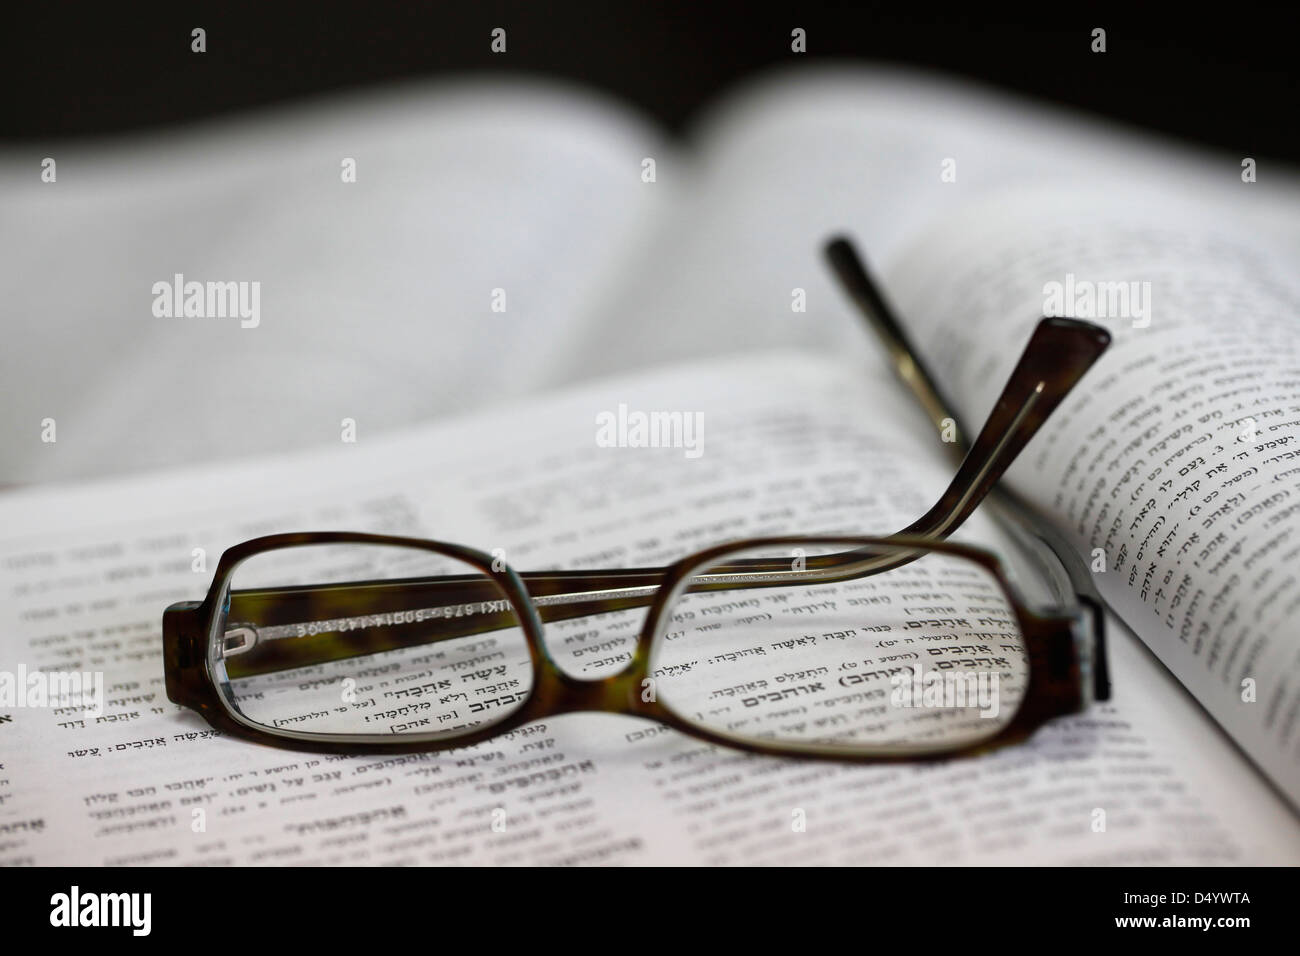 Un dictionnaire hébreu s'ouvrir à la parole de 'love', vu à travers des lunettes Banque D'Images